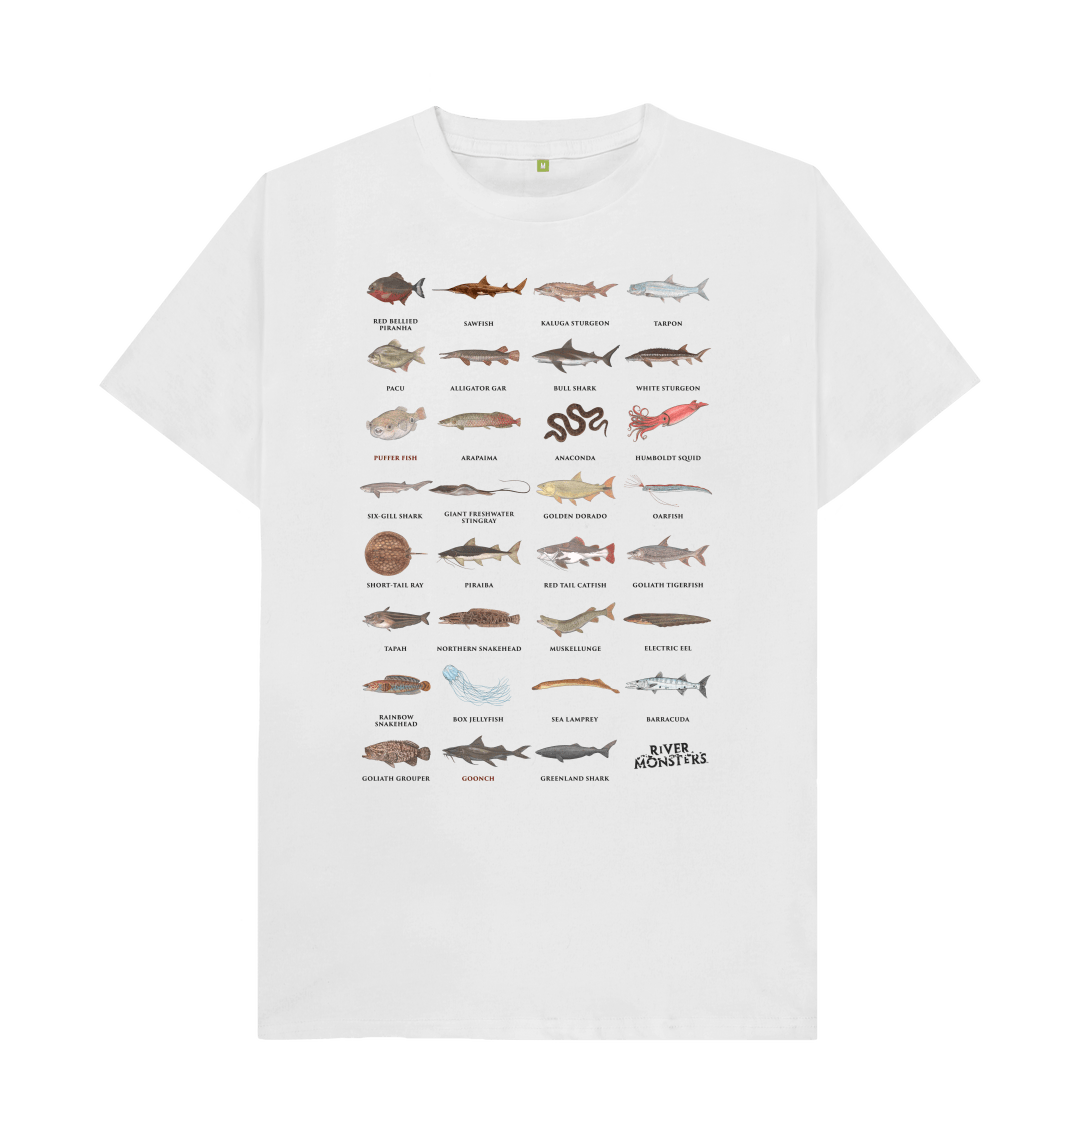 Plenty of Fish T-shirt